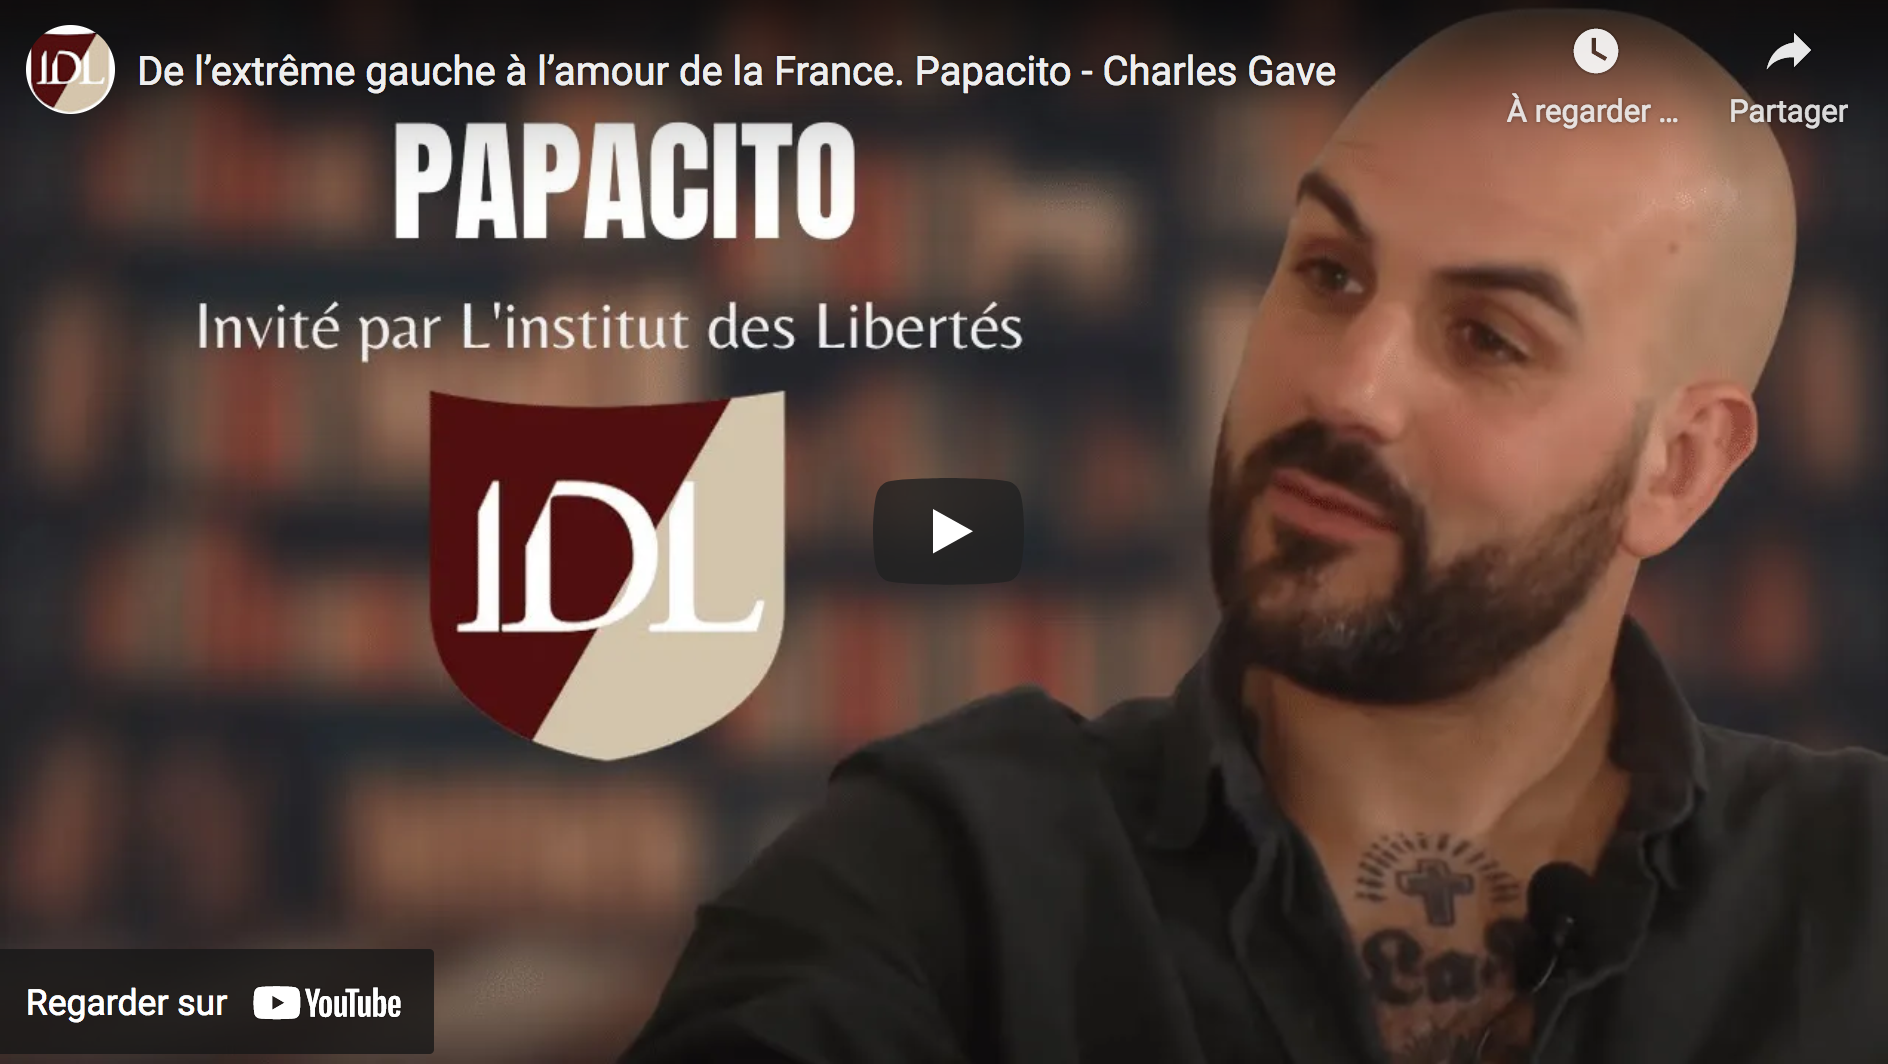 De l’extrême gauche à l’amour de la France. Charles Gave rencontre Papacito (ENTRETIEN)